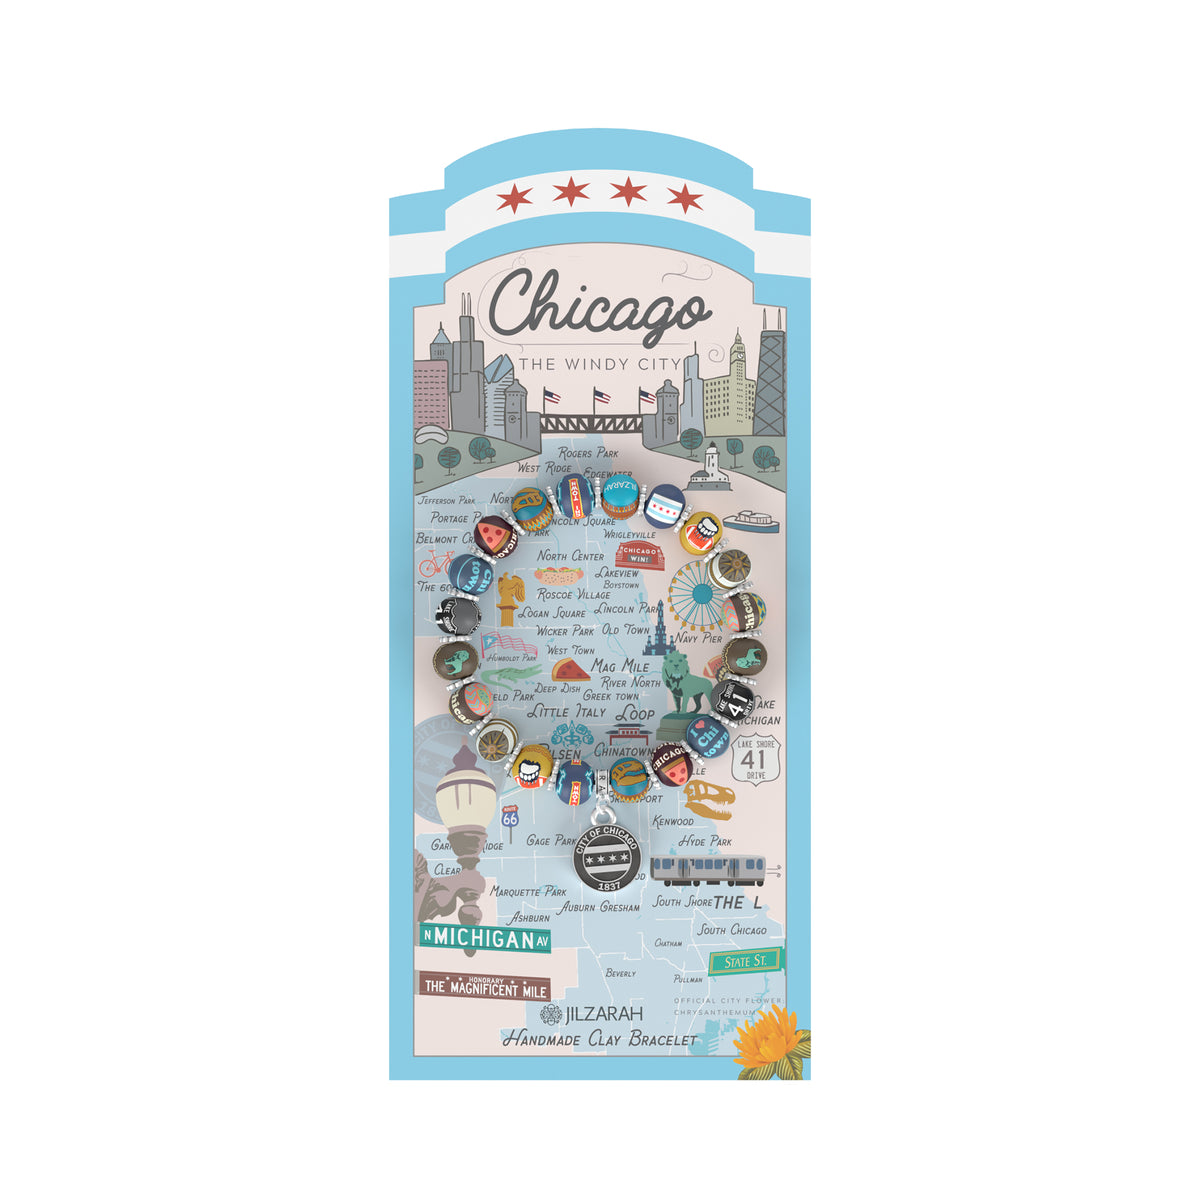 Chicago Places We Love Bracelet